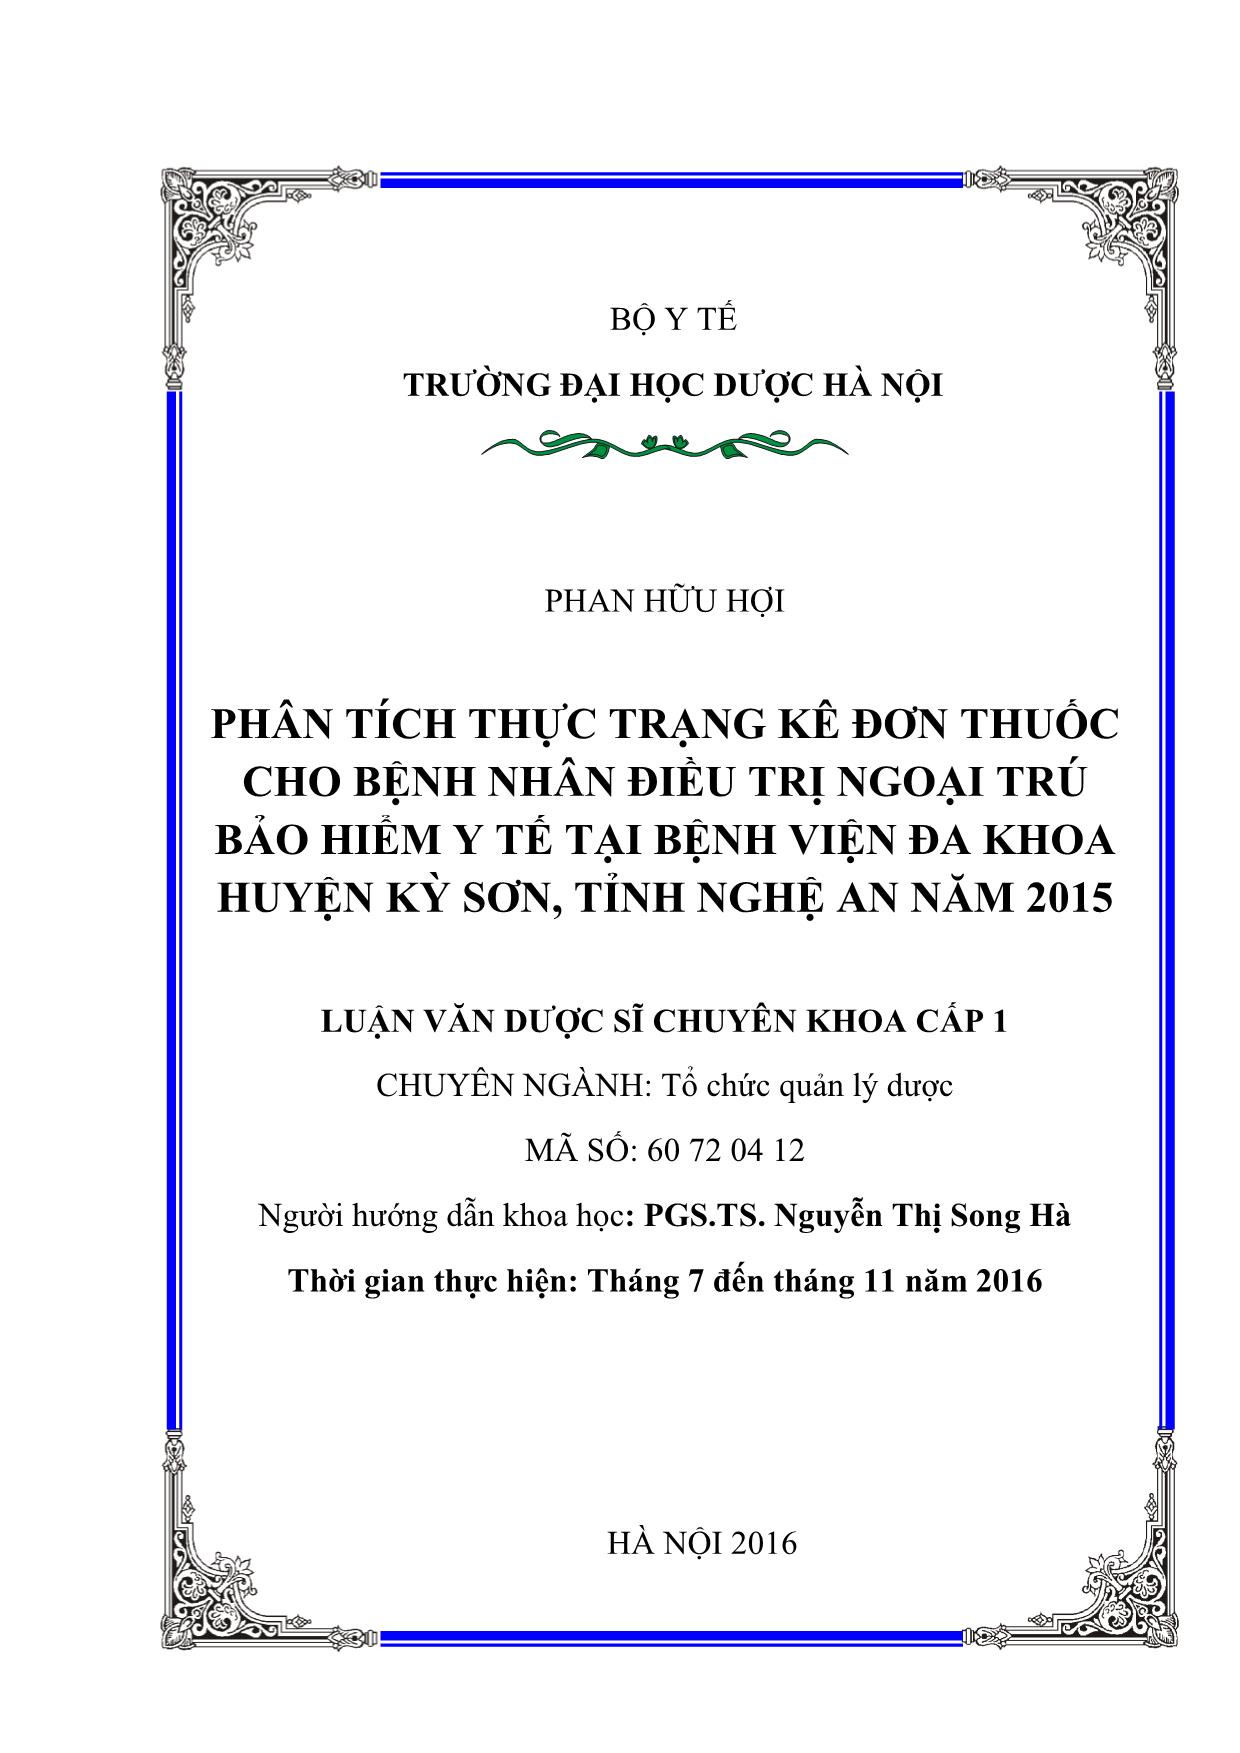 Luận án Phân tích thực trạng kê đơn thuốc cho bệnh nhân điều trị ngoại trú bảo hiểm y tế tại bệnh viện đa khoa huyện Kỳ sơn, tỉnh Nghệ an năm 2015 trang 2